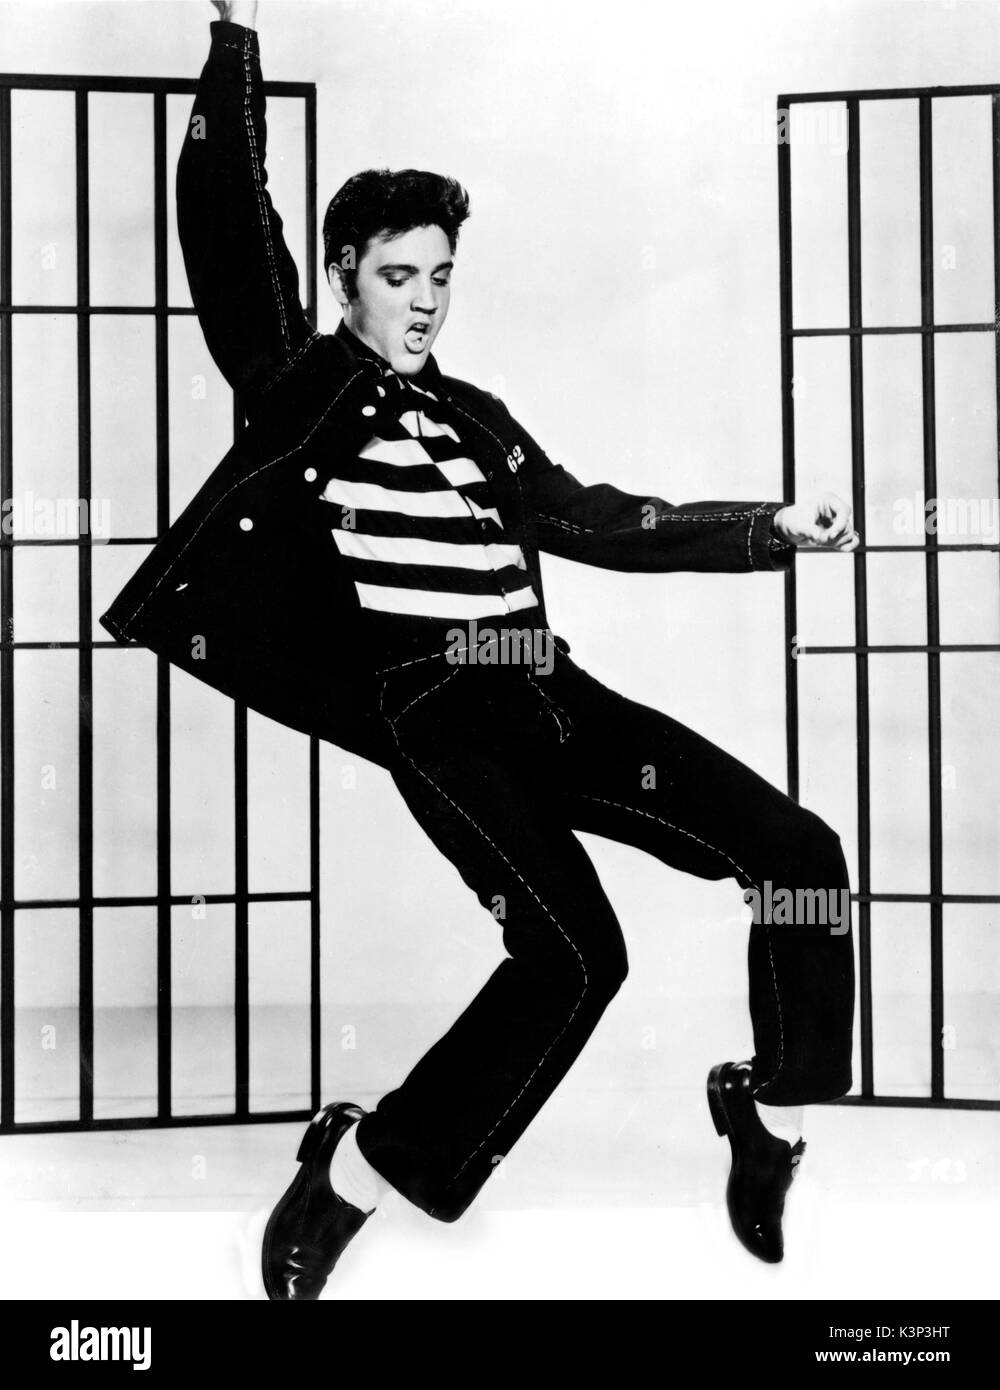 Elvis Presley hips es oscilante en la película "Jailhouse Rock", dirigida por Richard Thorpe. MGM / Avon Productions. 1957 Foto de stock